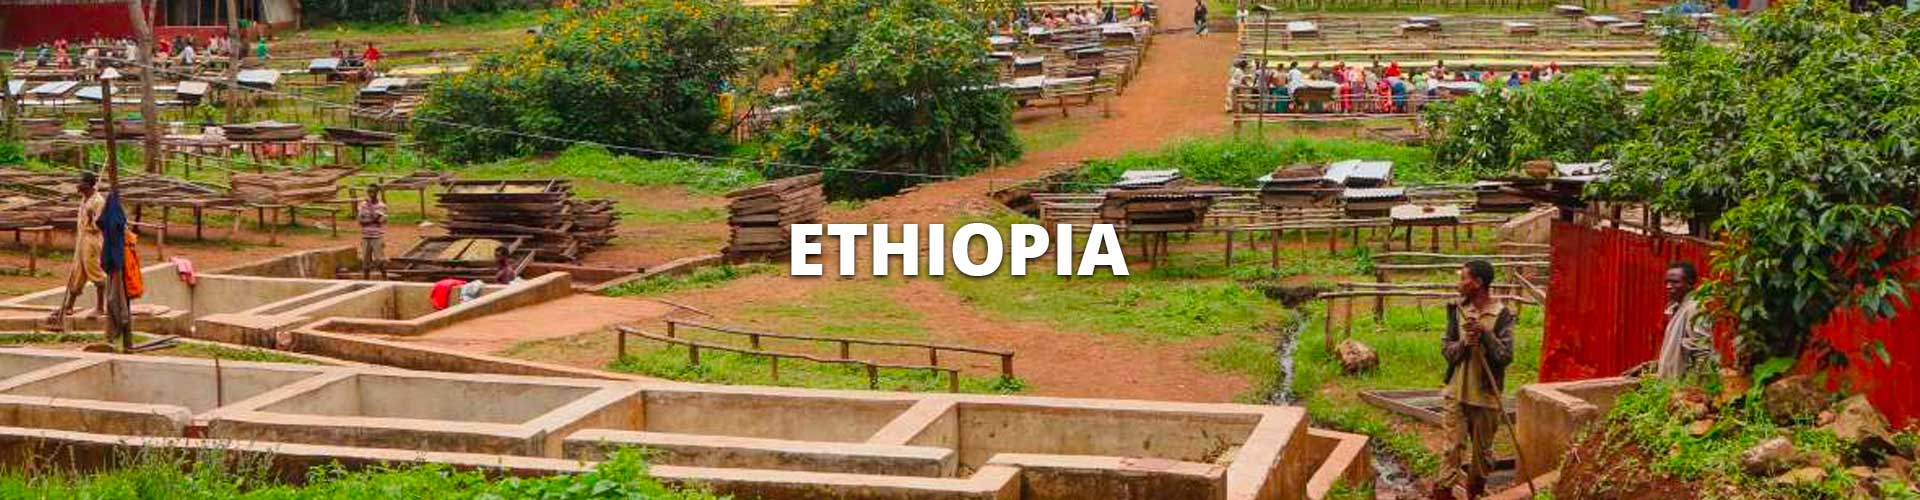 ethiopia-sm-header